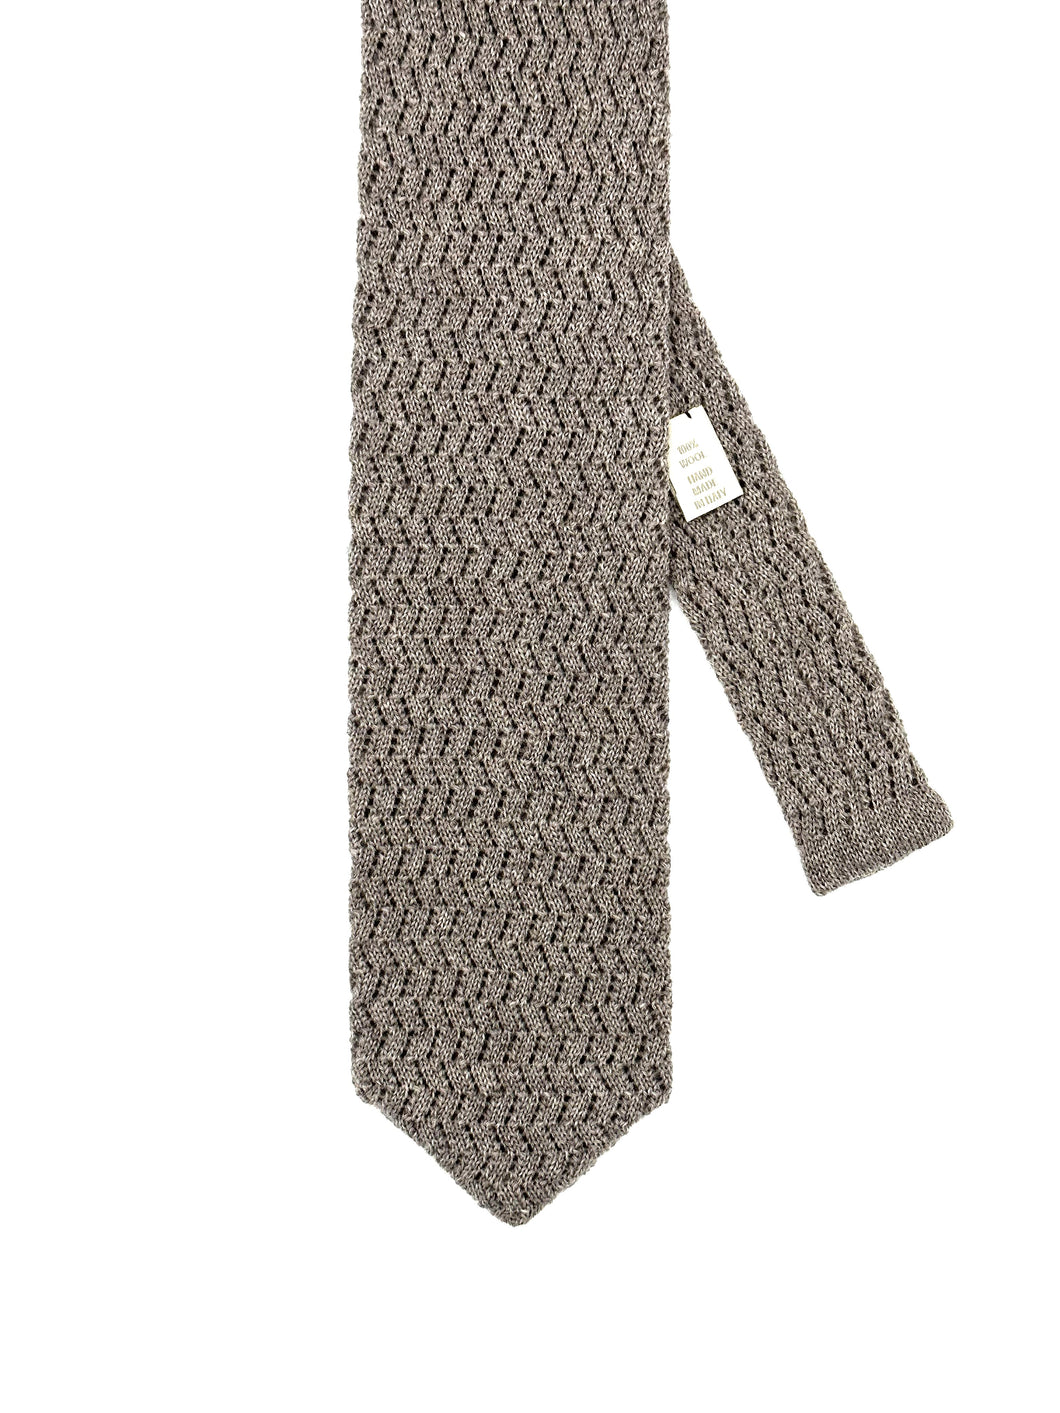 Cravate tricot laine zig zag gris clair